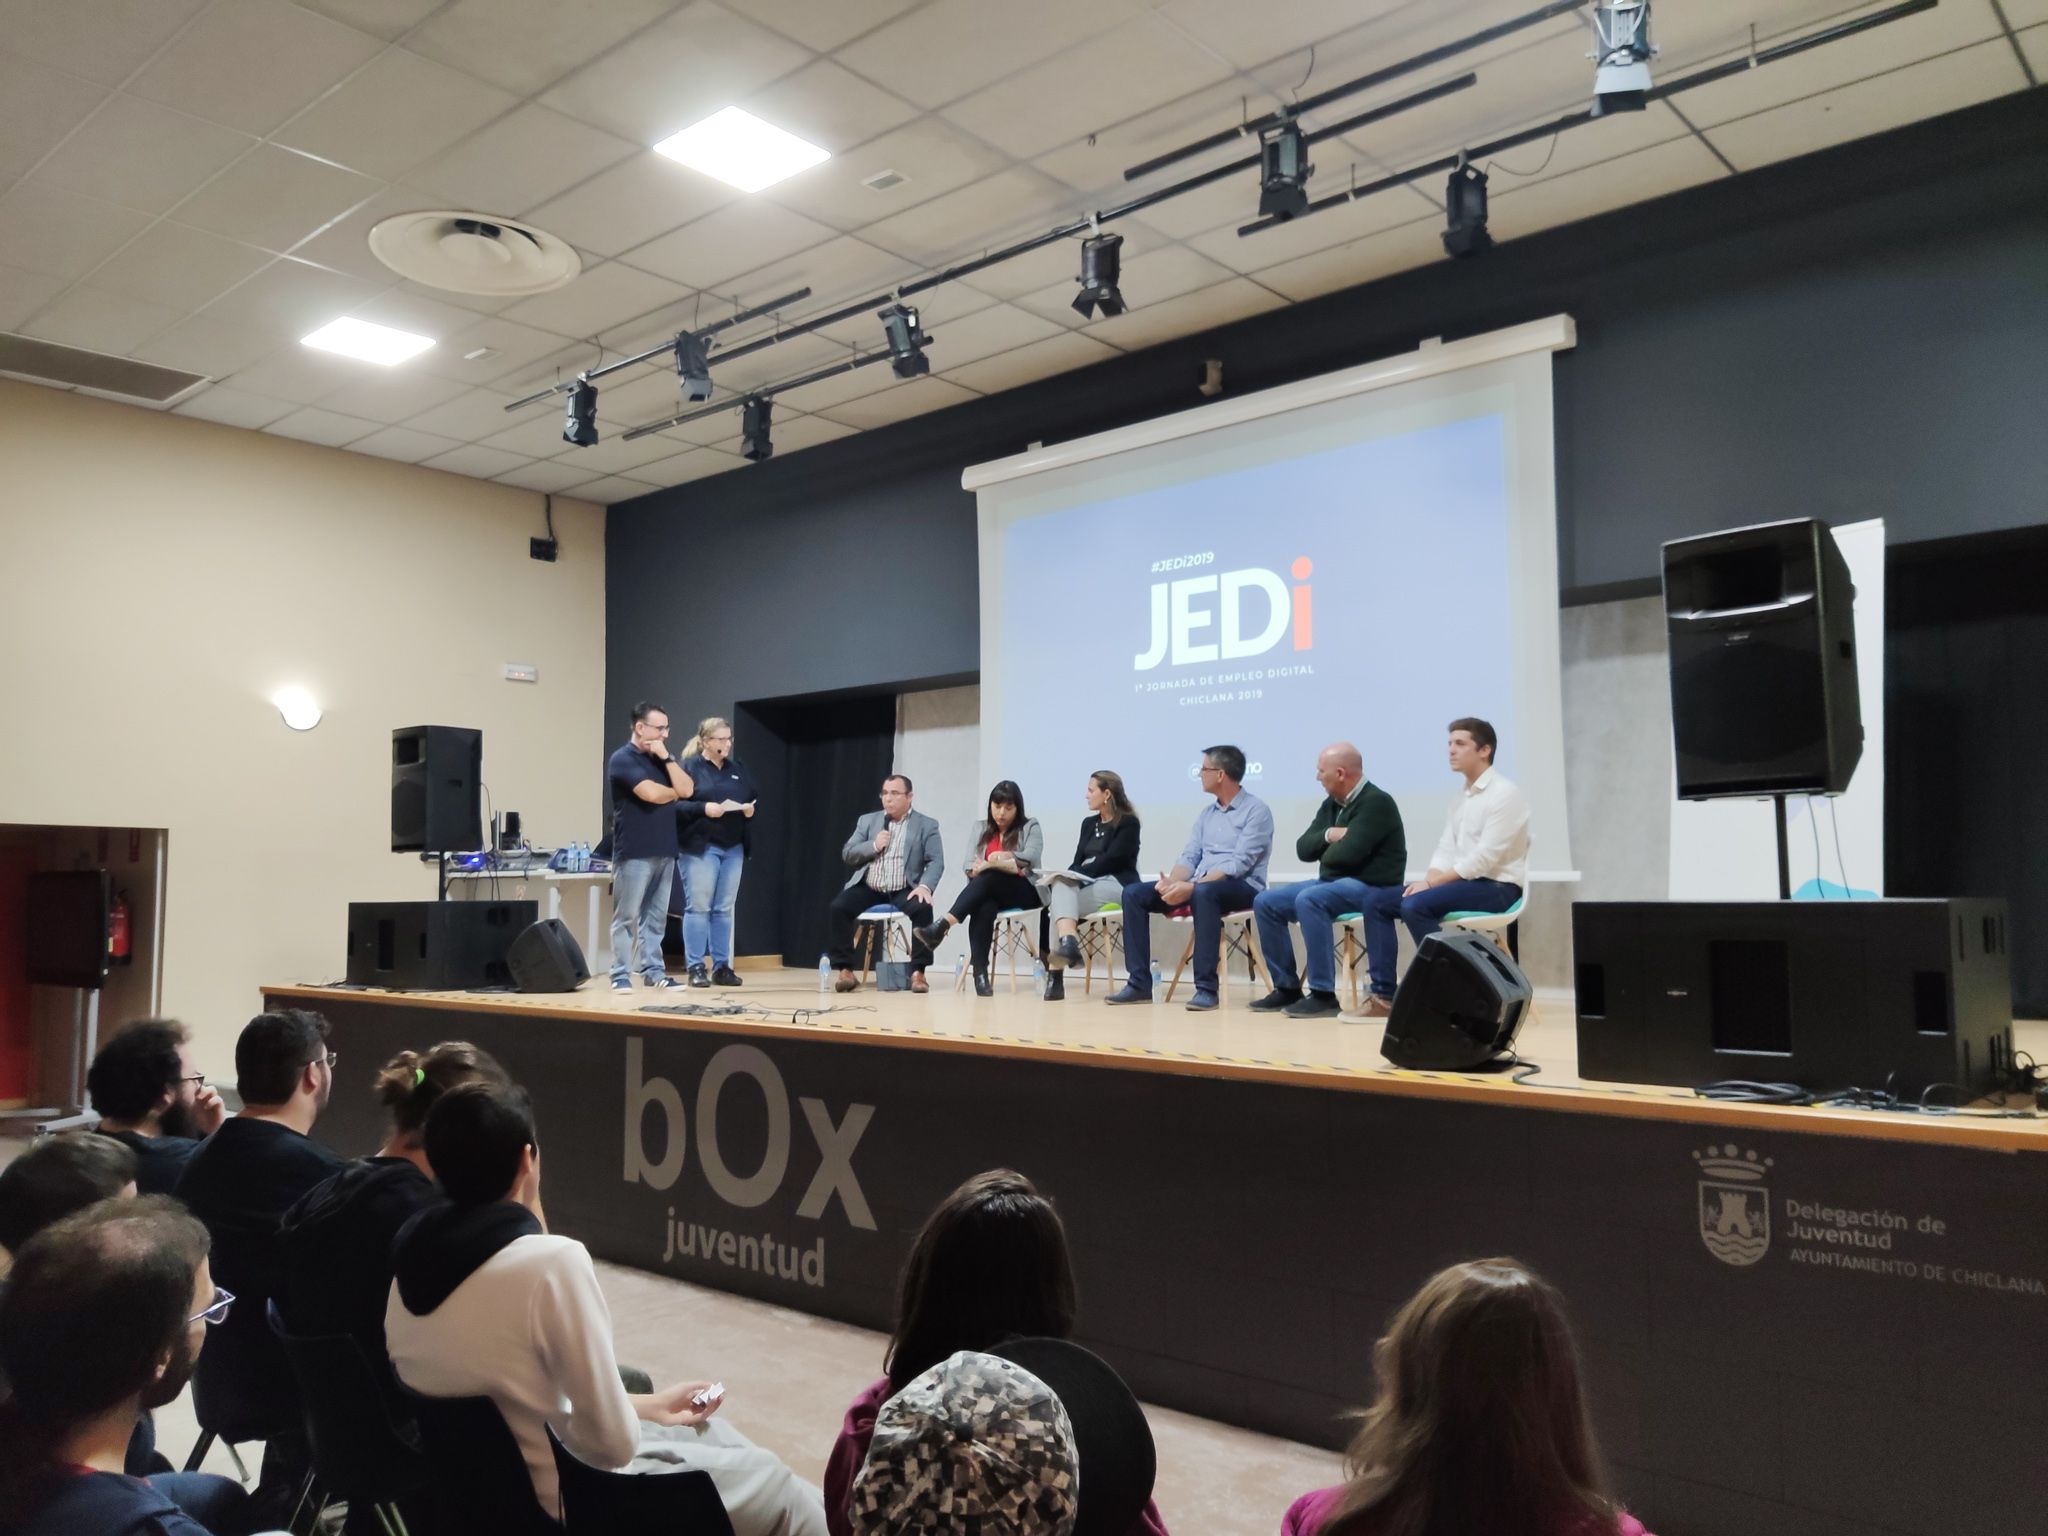 Primera Jornada Empleo Digital #JEDi2019